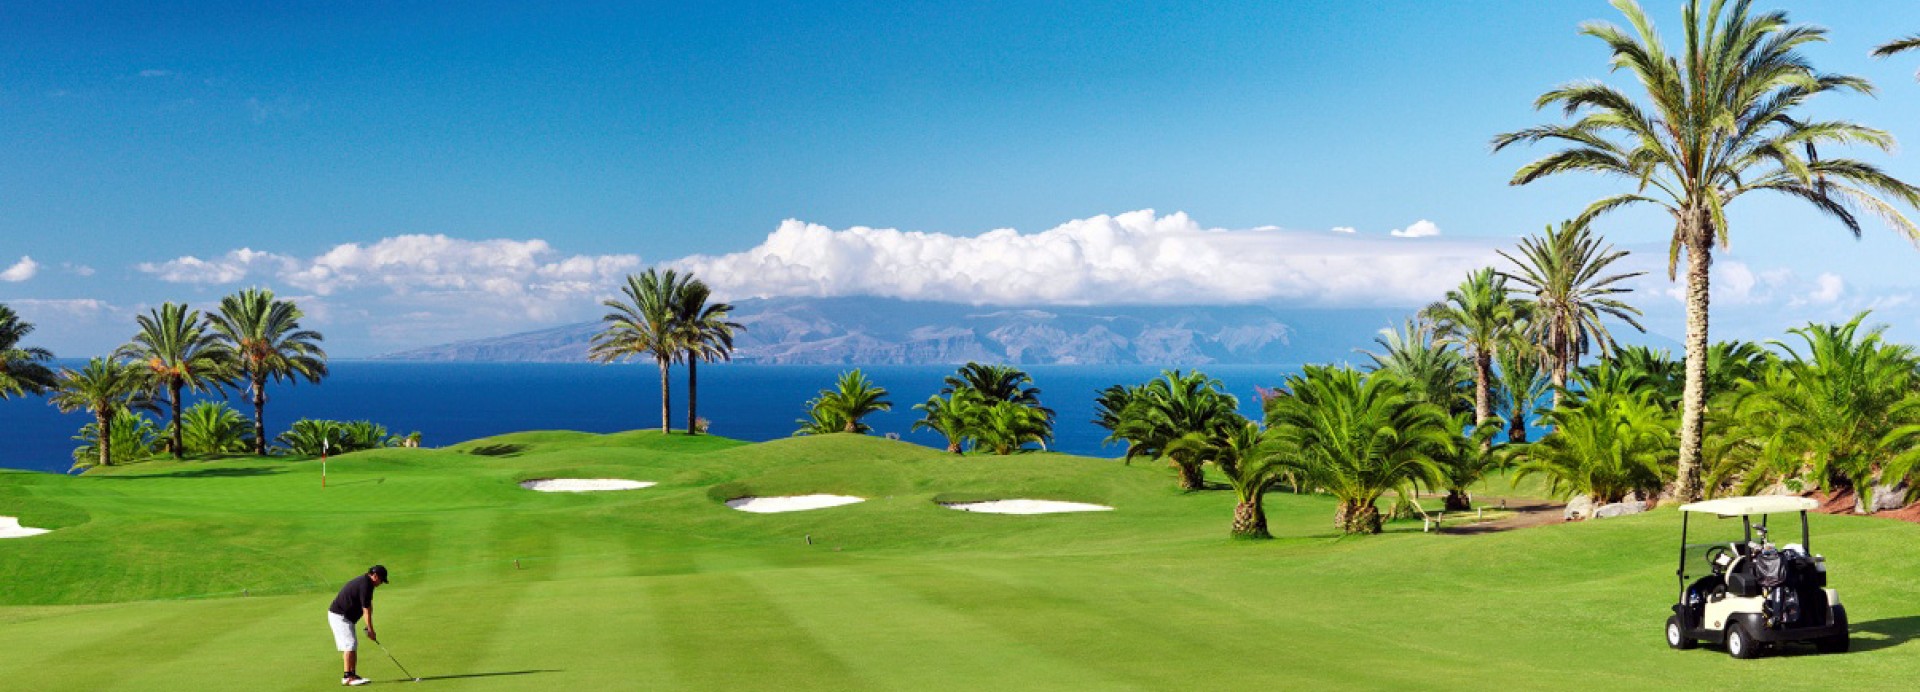 Abama Golf Tenerife  | Golfové zájezdy, golfová dovolená, luxusní golf